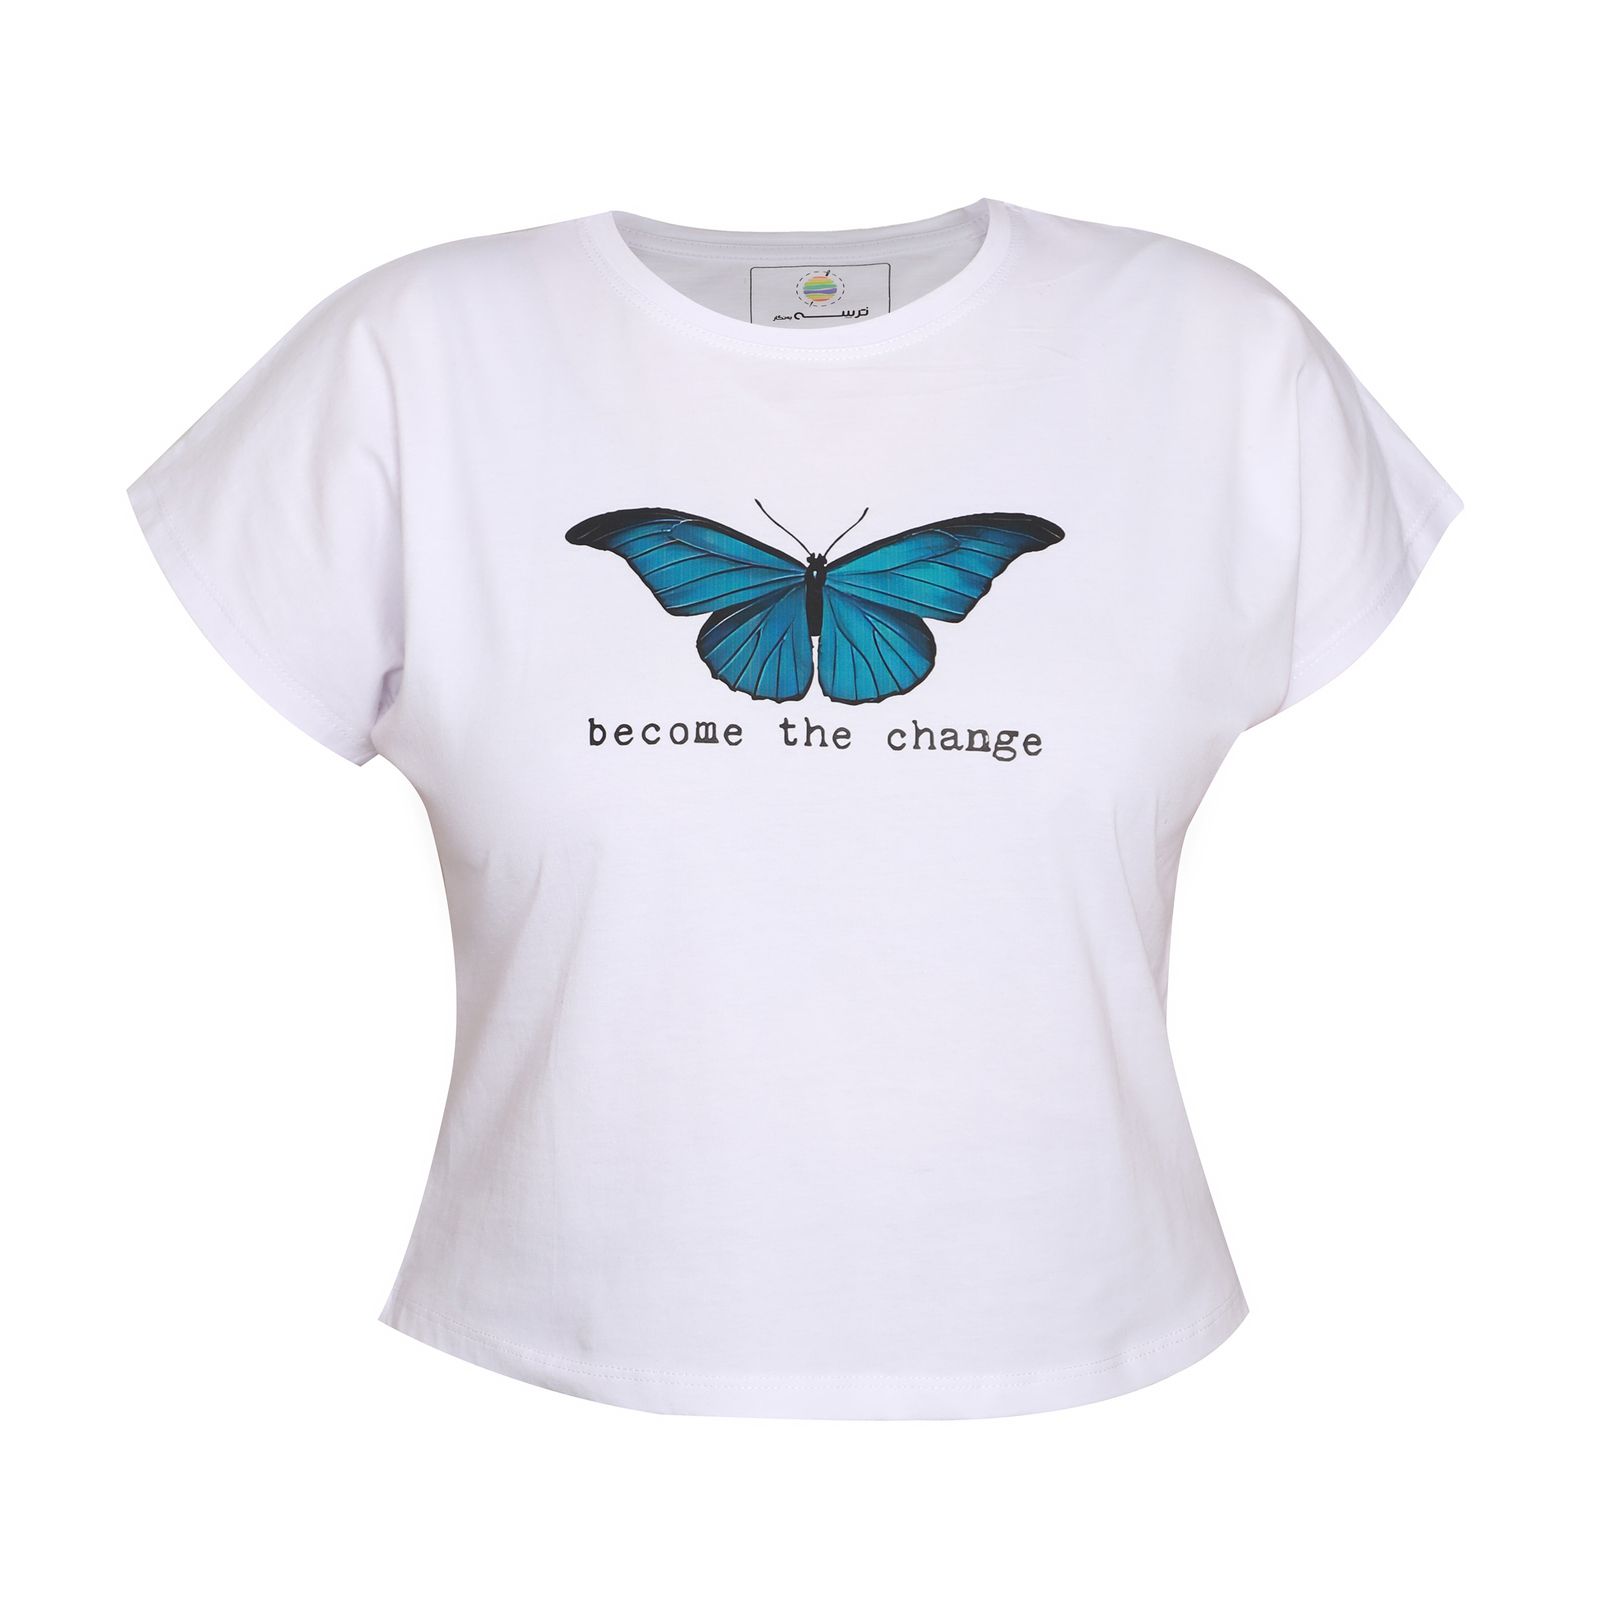 کراپ تی شرت آستین کوتاه زنانه ترسه به نگار طرح پروانه کد 143 -  - 1